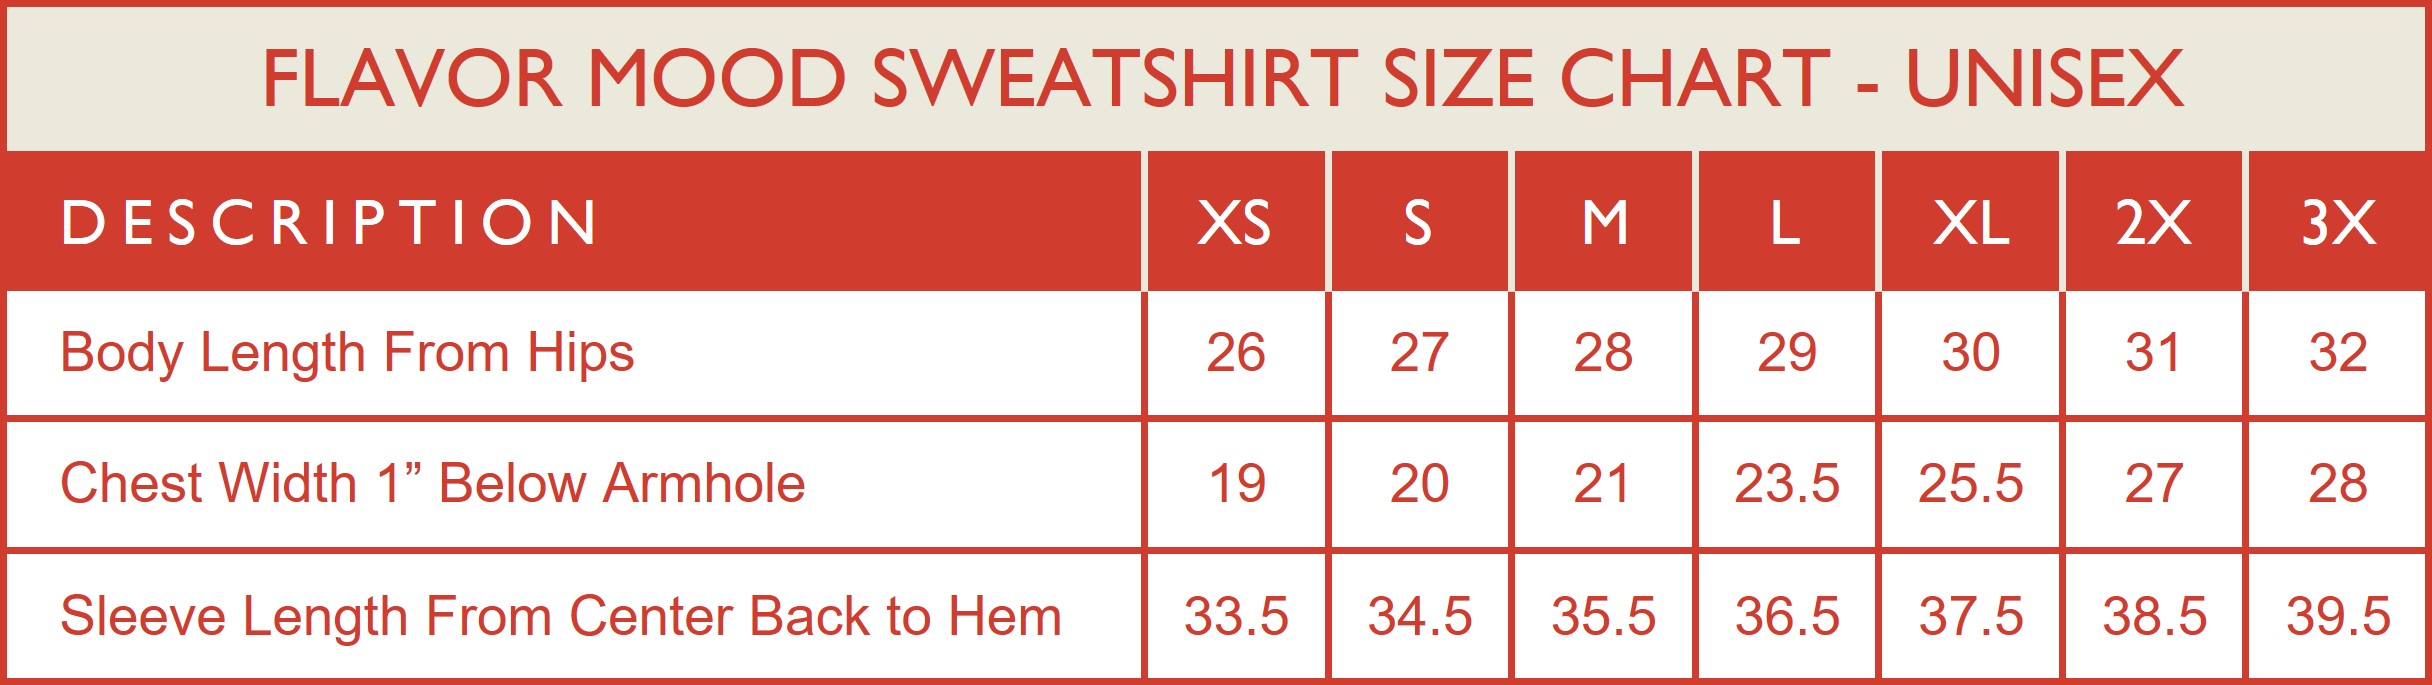 Unisex Size Chart for Flavor Mood Sweatshirts